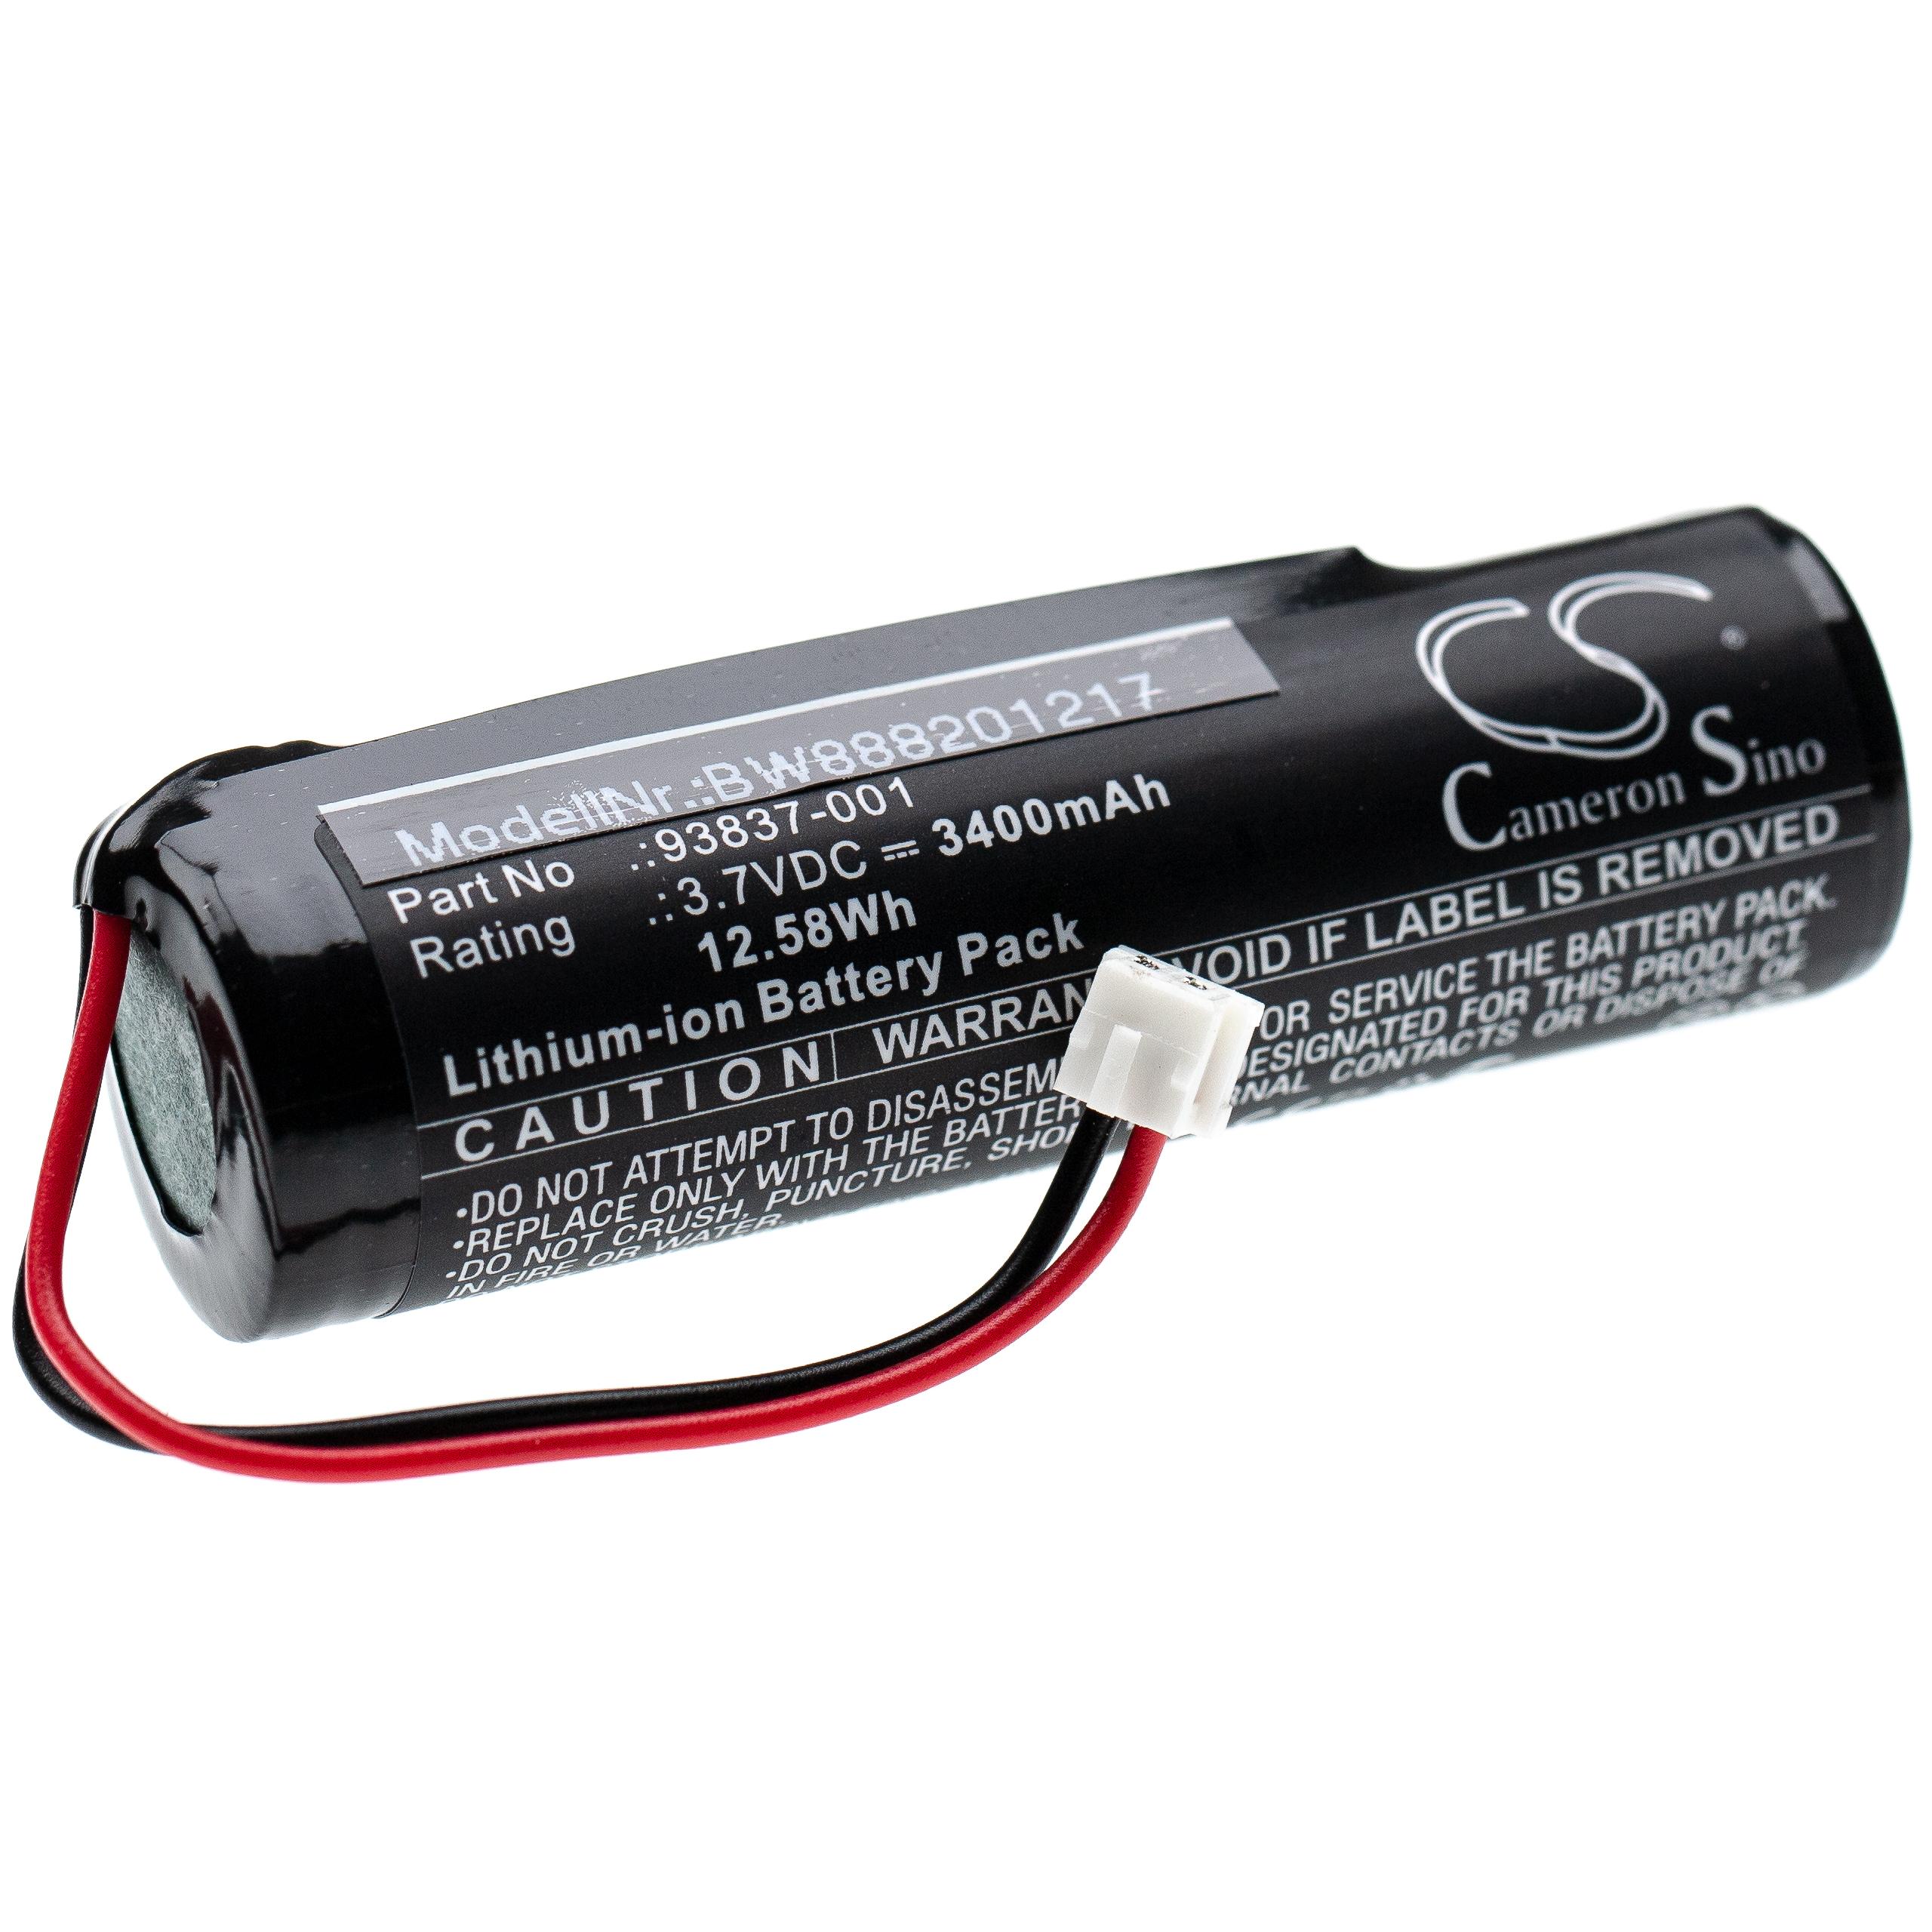 Batterie remplace Wahl 93837-001, 93837-200 pour rasoir électrique - 3400mAh 3,7V Li-ion